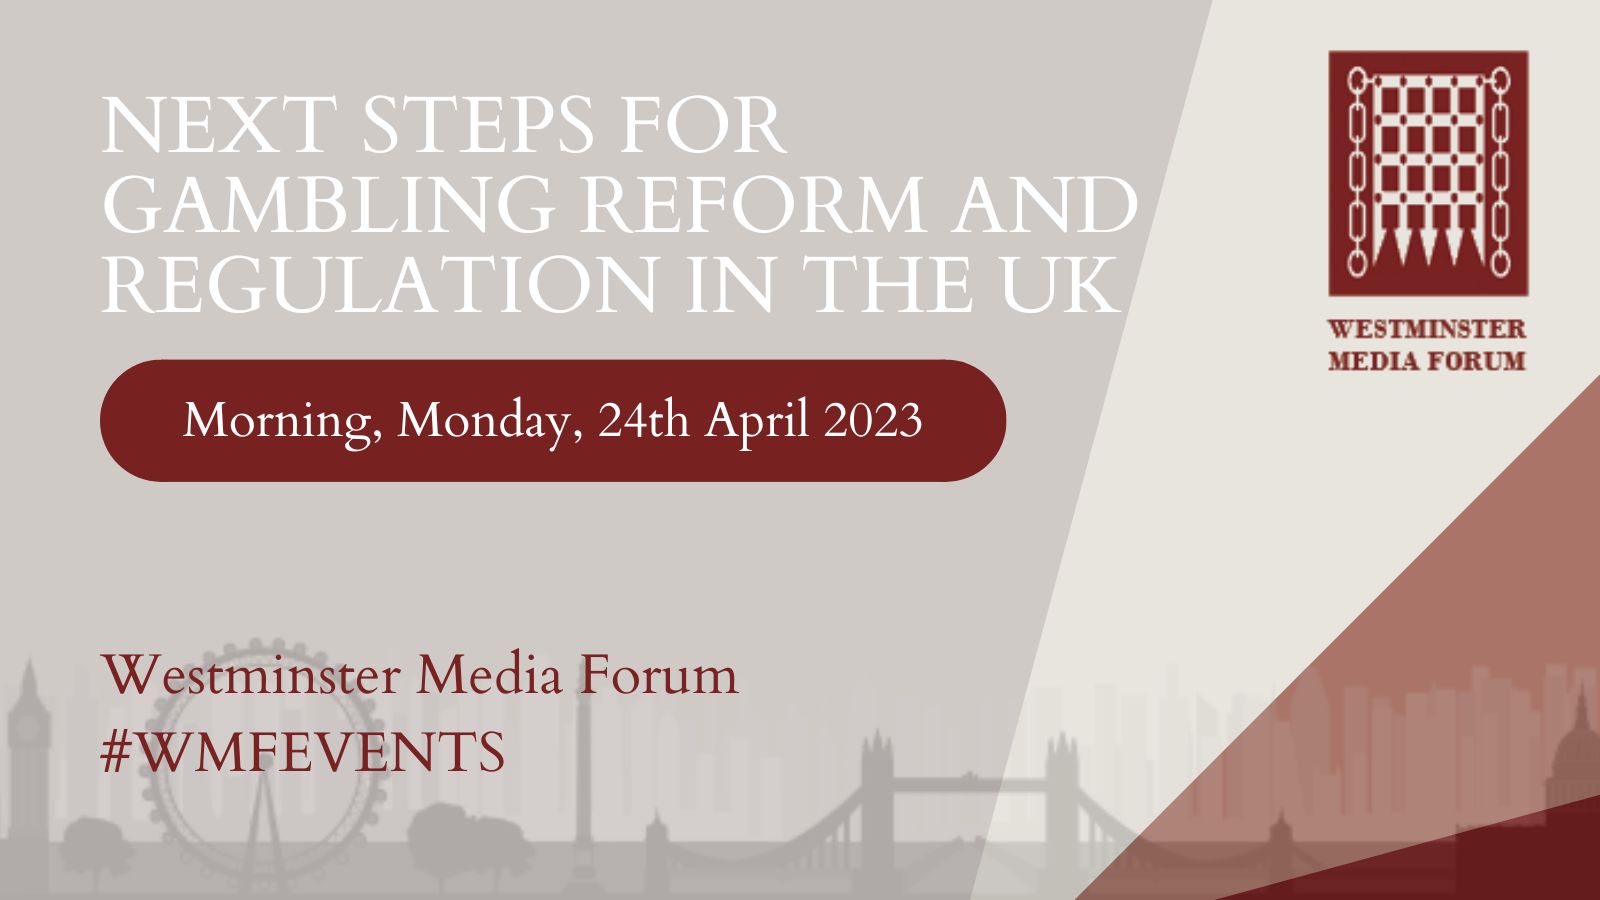 Westminster Media Forum conference April 2023